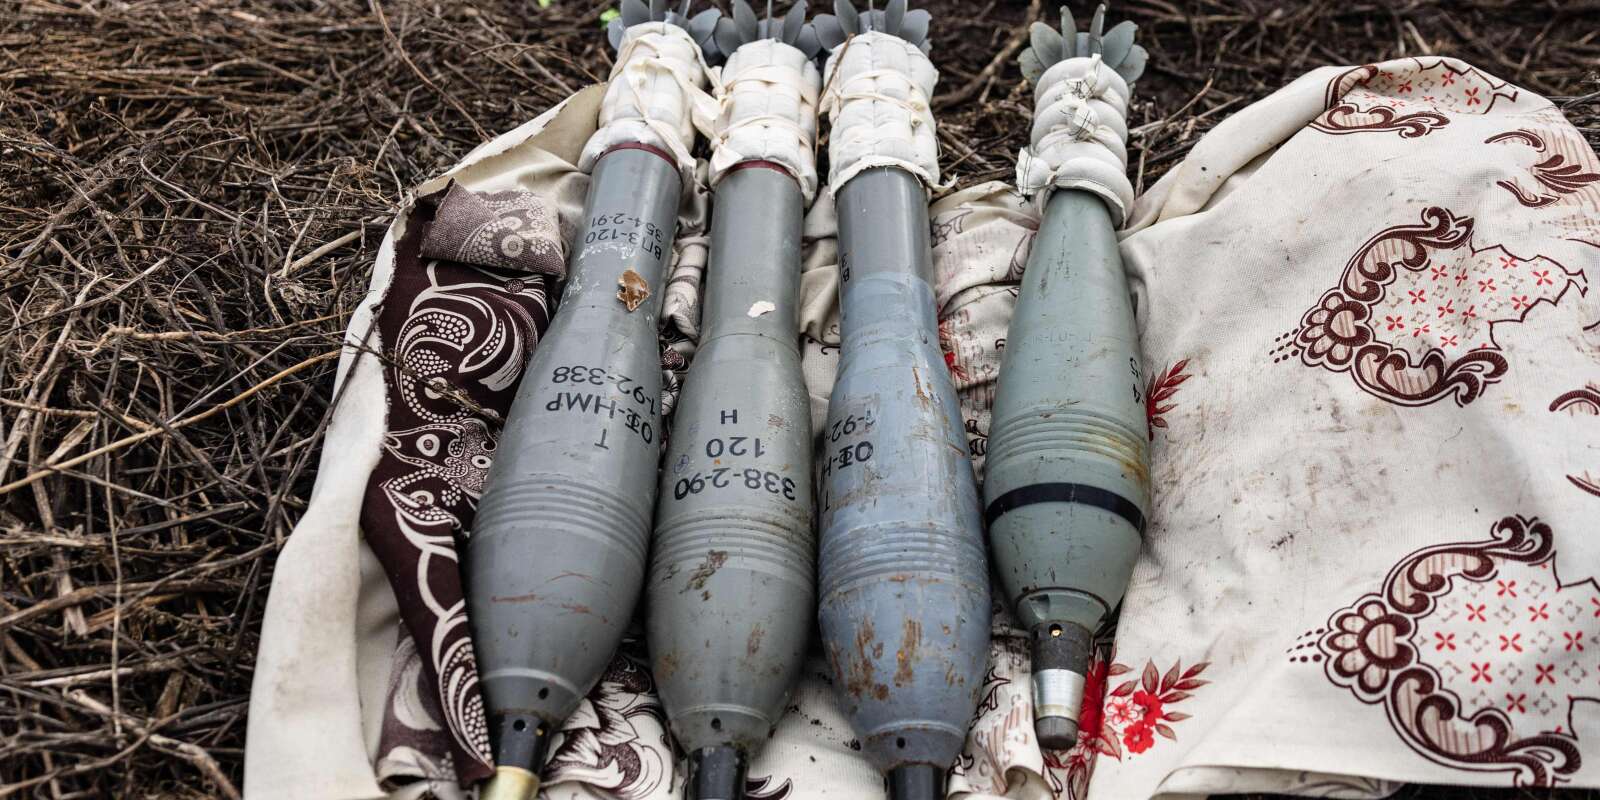 Des obus de 120 mm que les militaires ukrainiens s’apprêtent à tirer dans les environs de Bakhmout, dans l’est de l’Ukraine, le 30 décembre 2022.